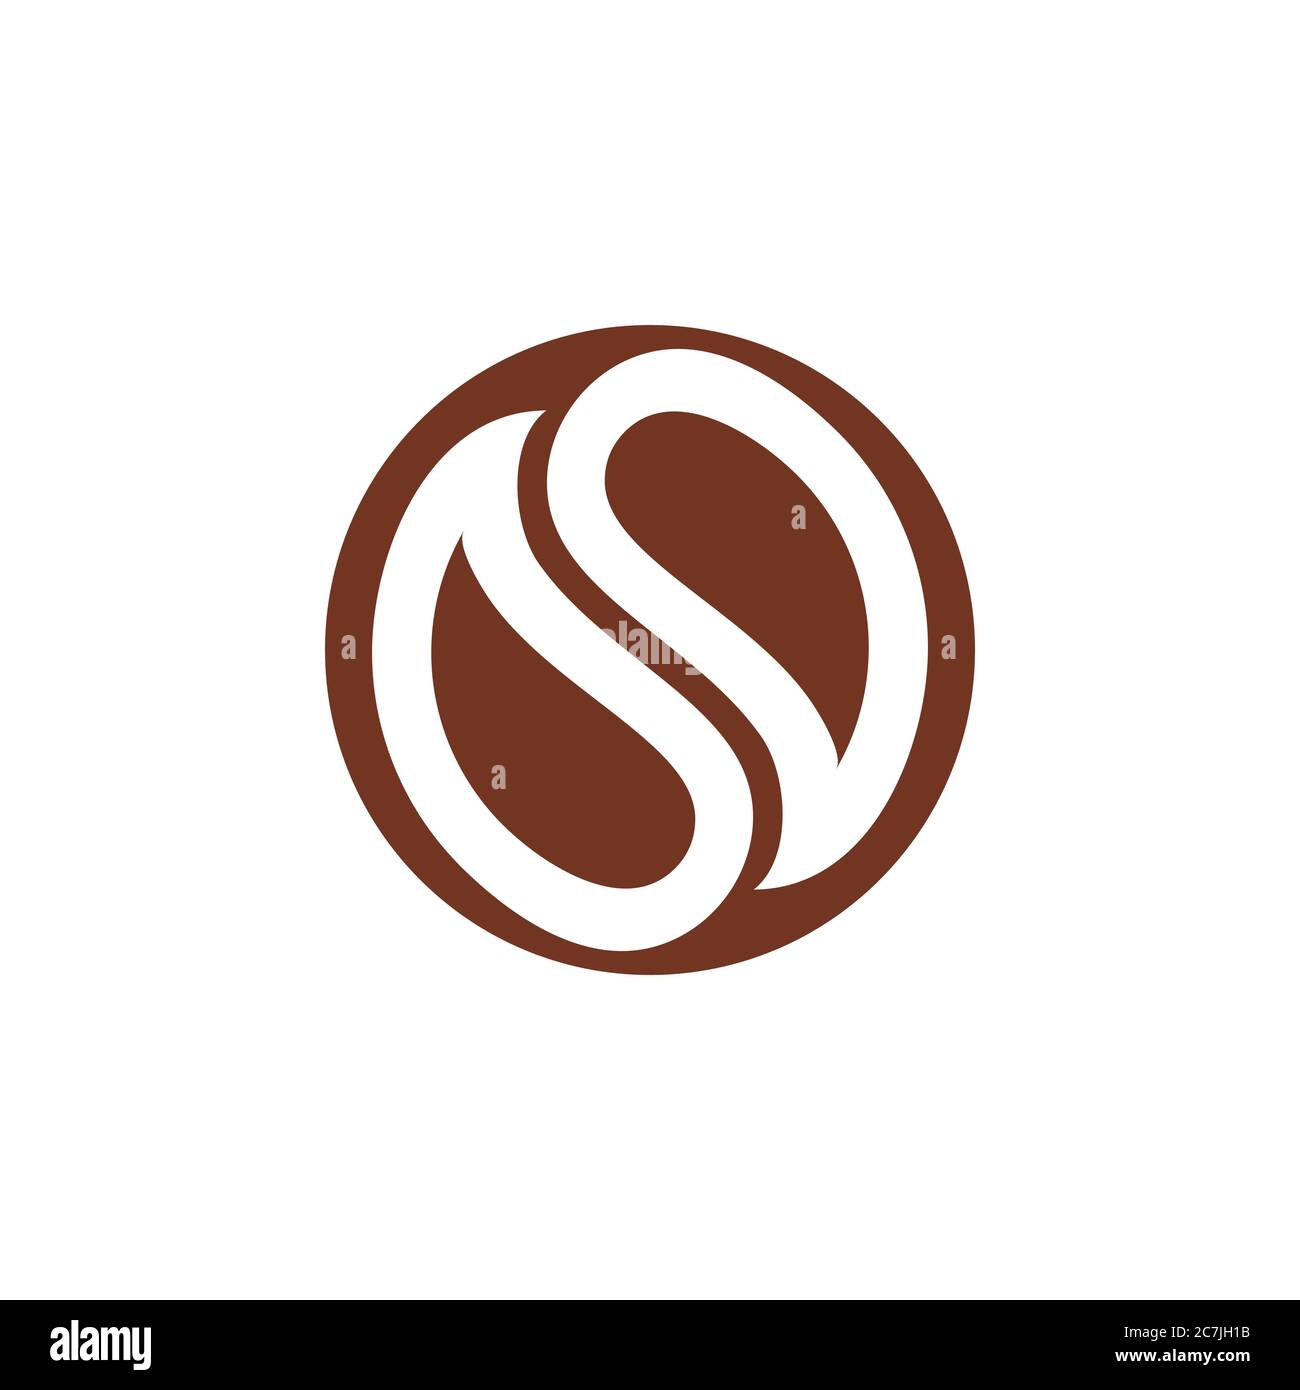 letter s coffee bean logo vector Stock Vector